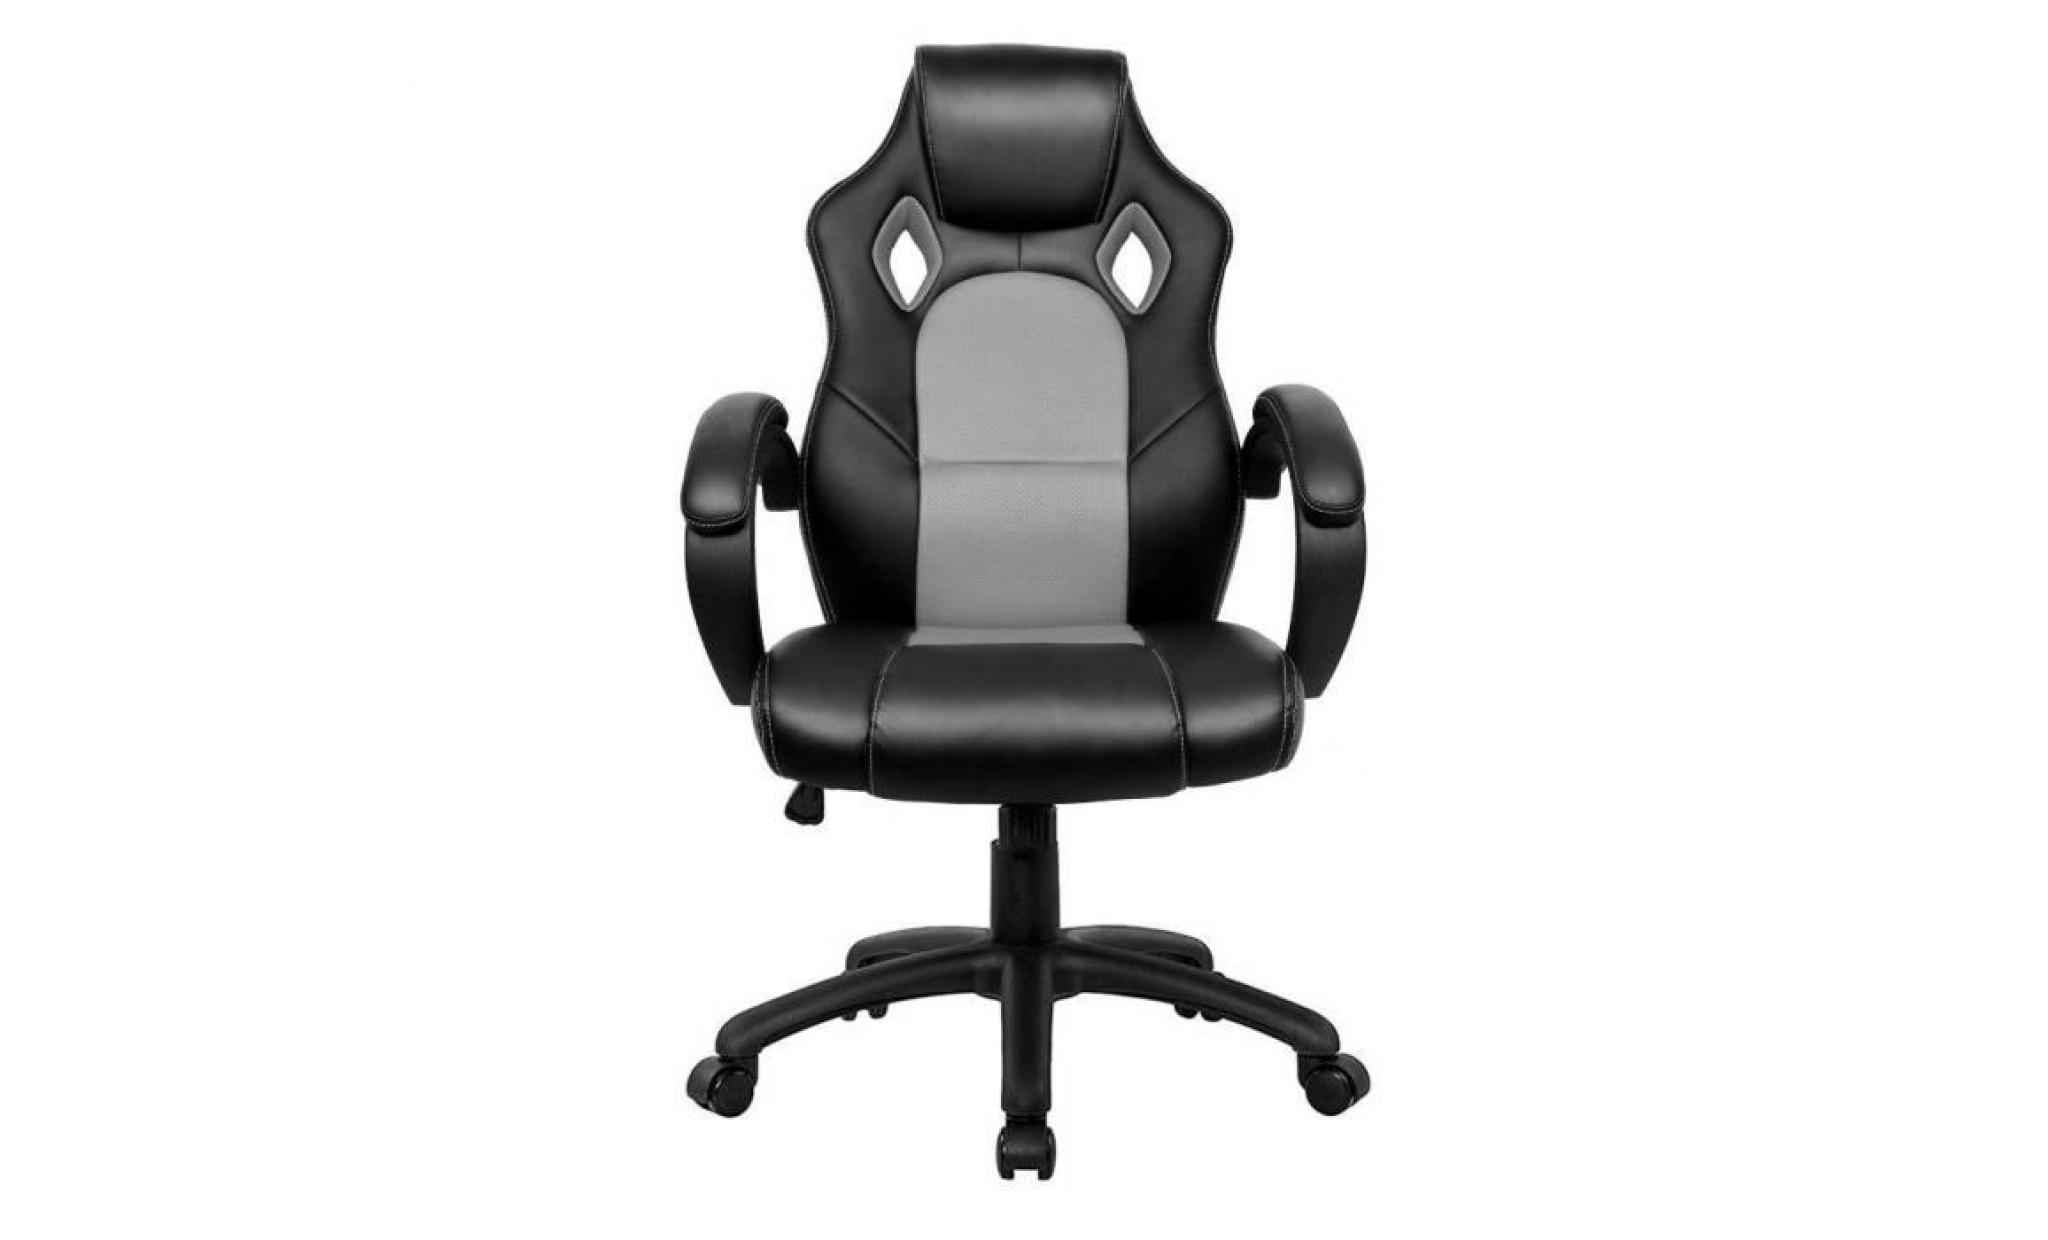 fauteuil de bureau gaming chaise   moderne confortable ergonomique en similicuir pu   hauteur réglable   noir   intimate wm heart pas cher